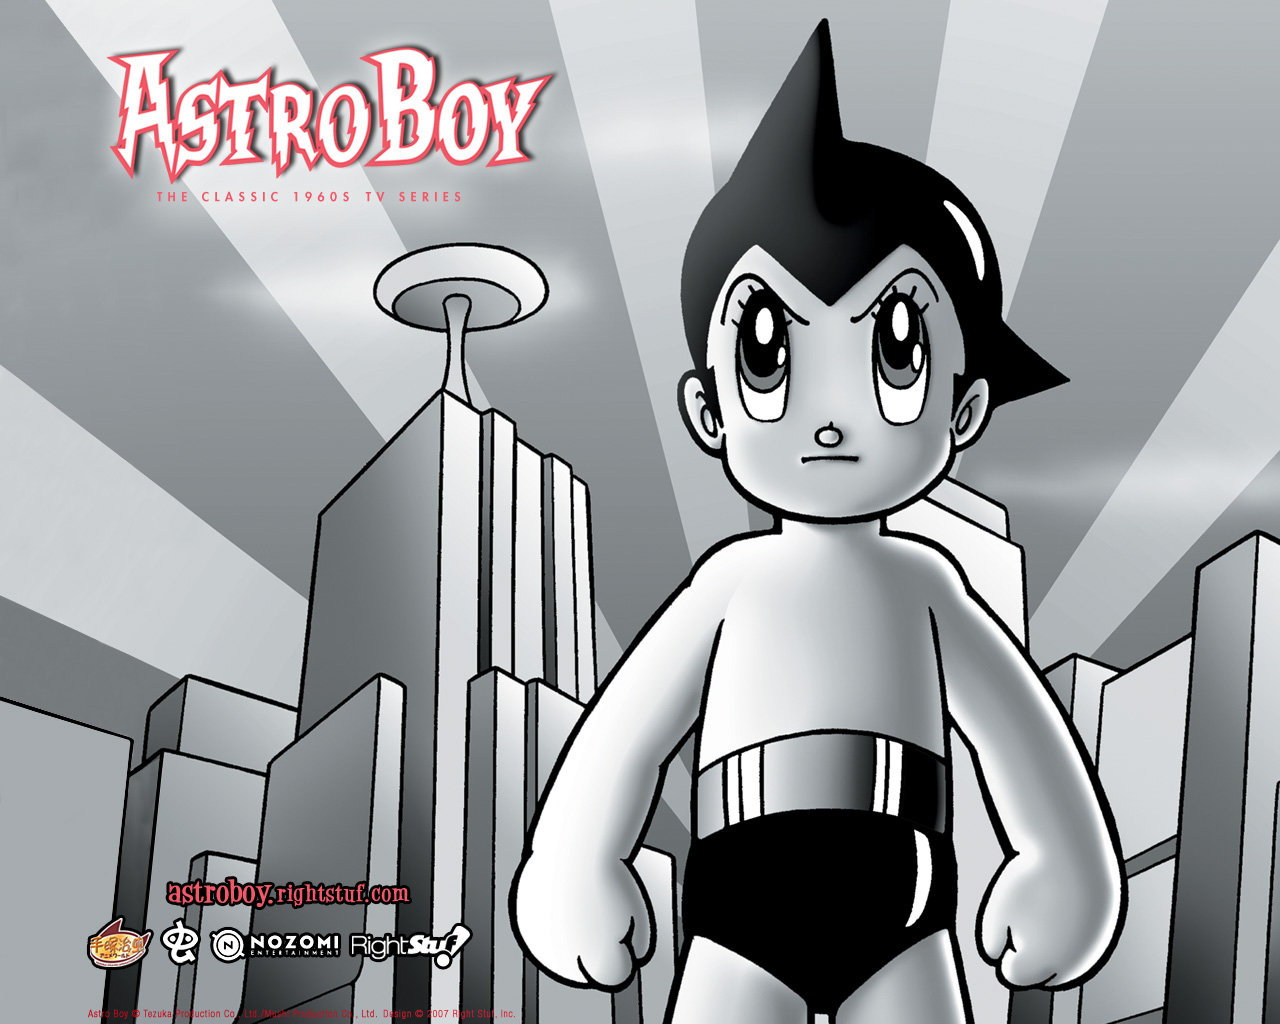 Meilleurs fonds d'écran Astro Boy pour l'écran du téléphone